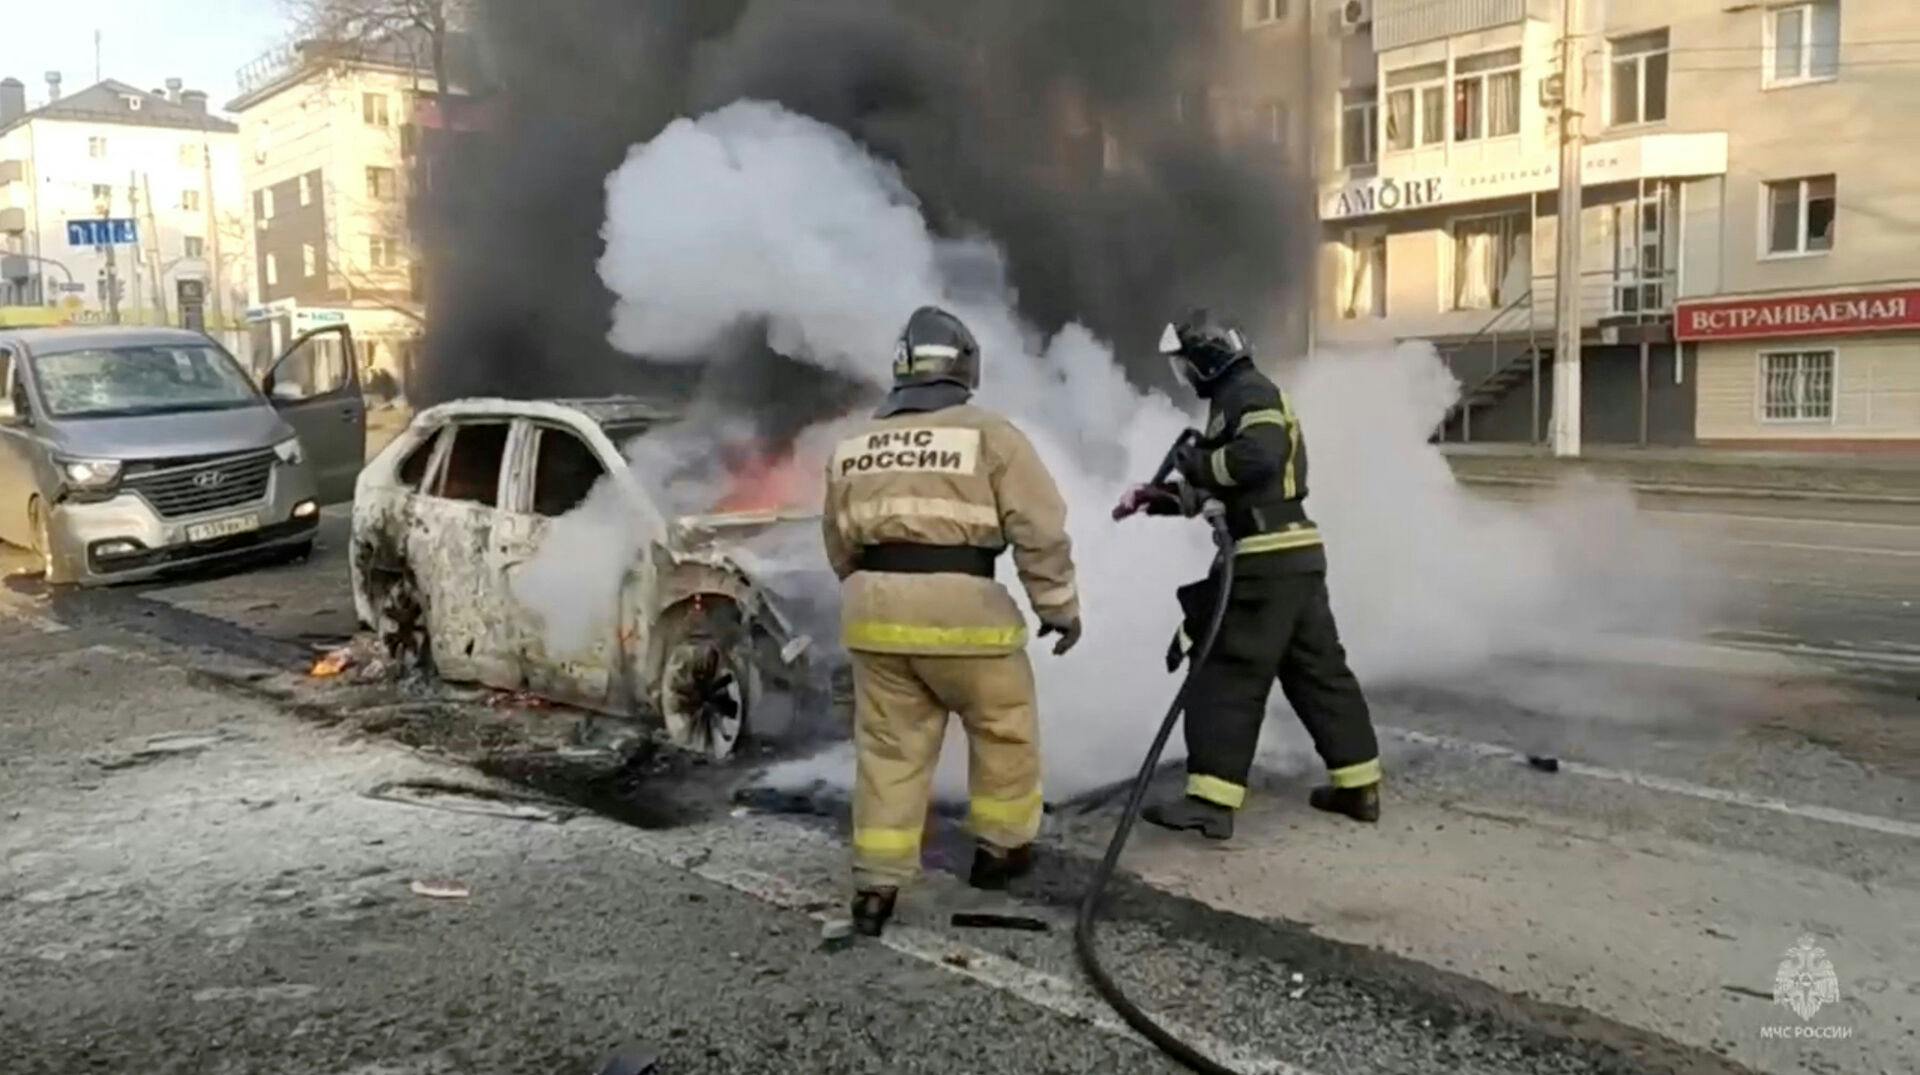 Brandmænd er i gang med at slukke en brændende bil i den russiske by Belgorod, der ifølge russiske myndigheder er ramt af et ukrainsk angreb lørdag. 